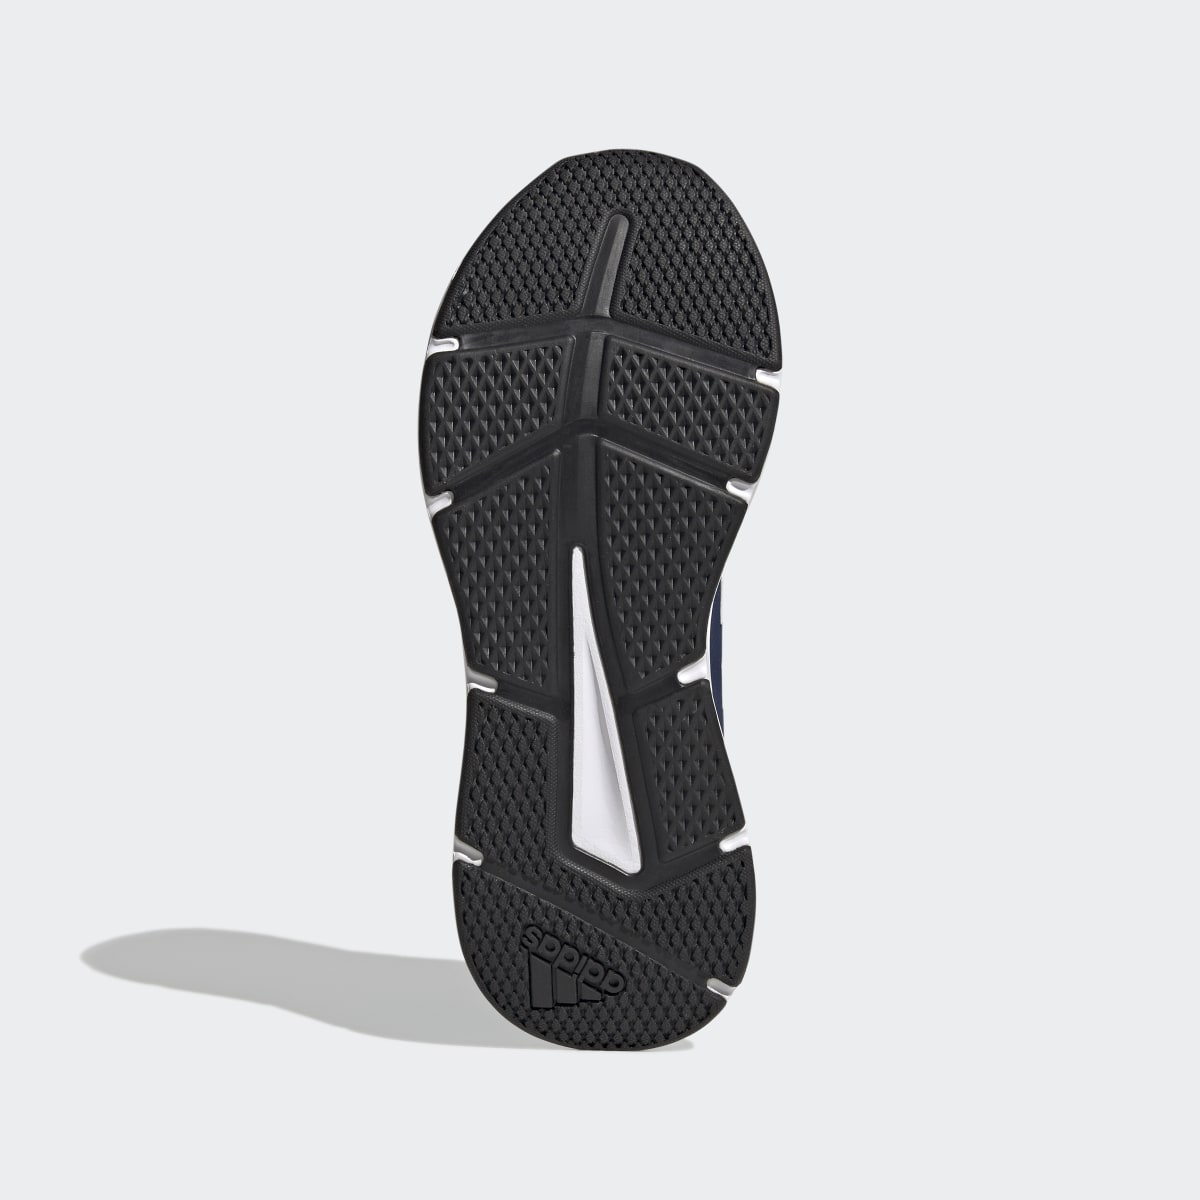 Adidas Galaxy 6 Ayakkabı. 4